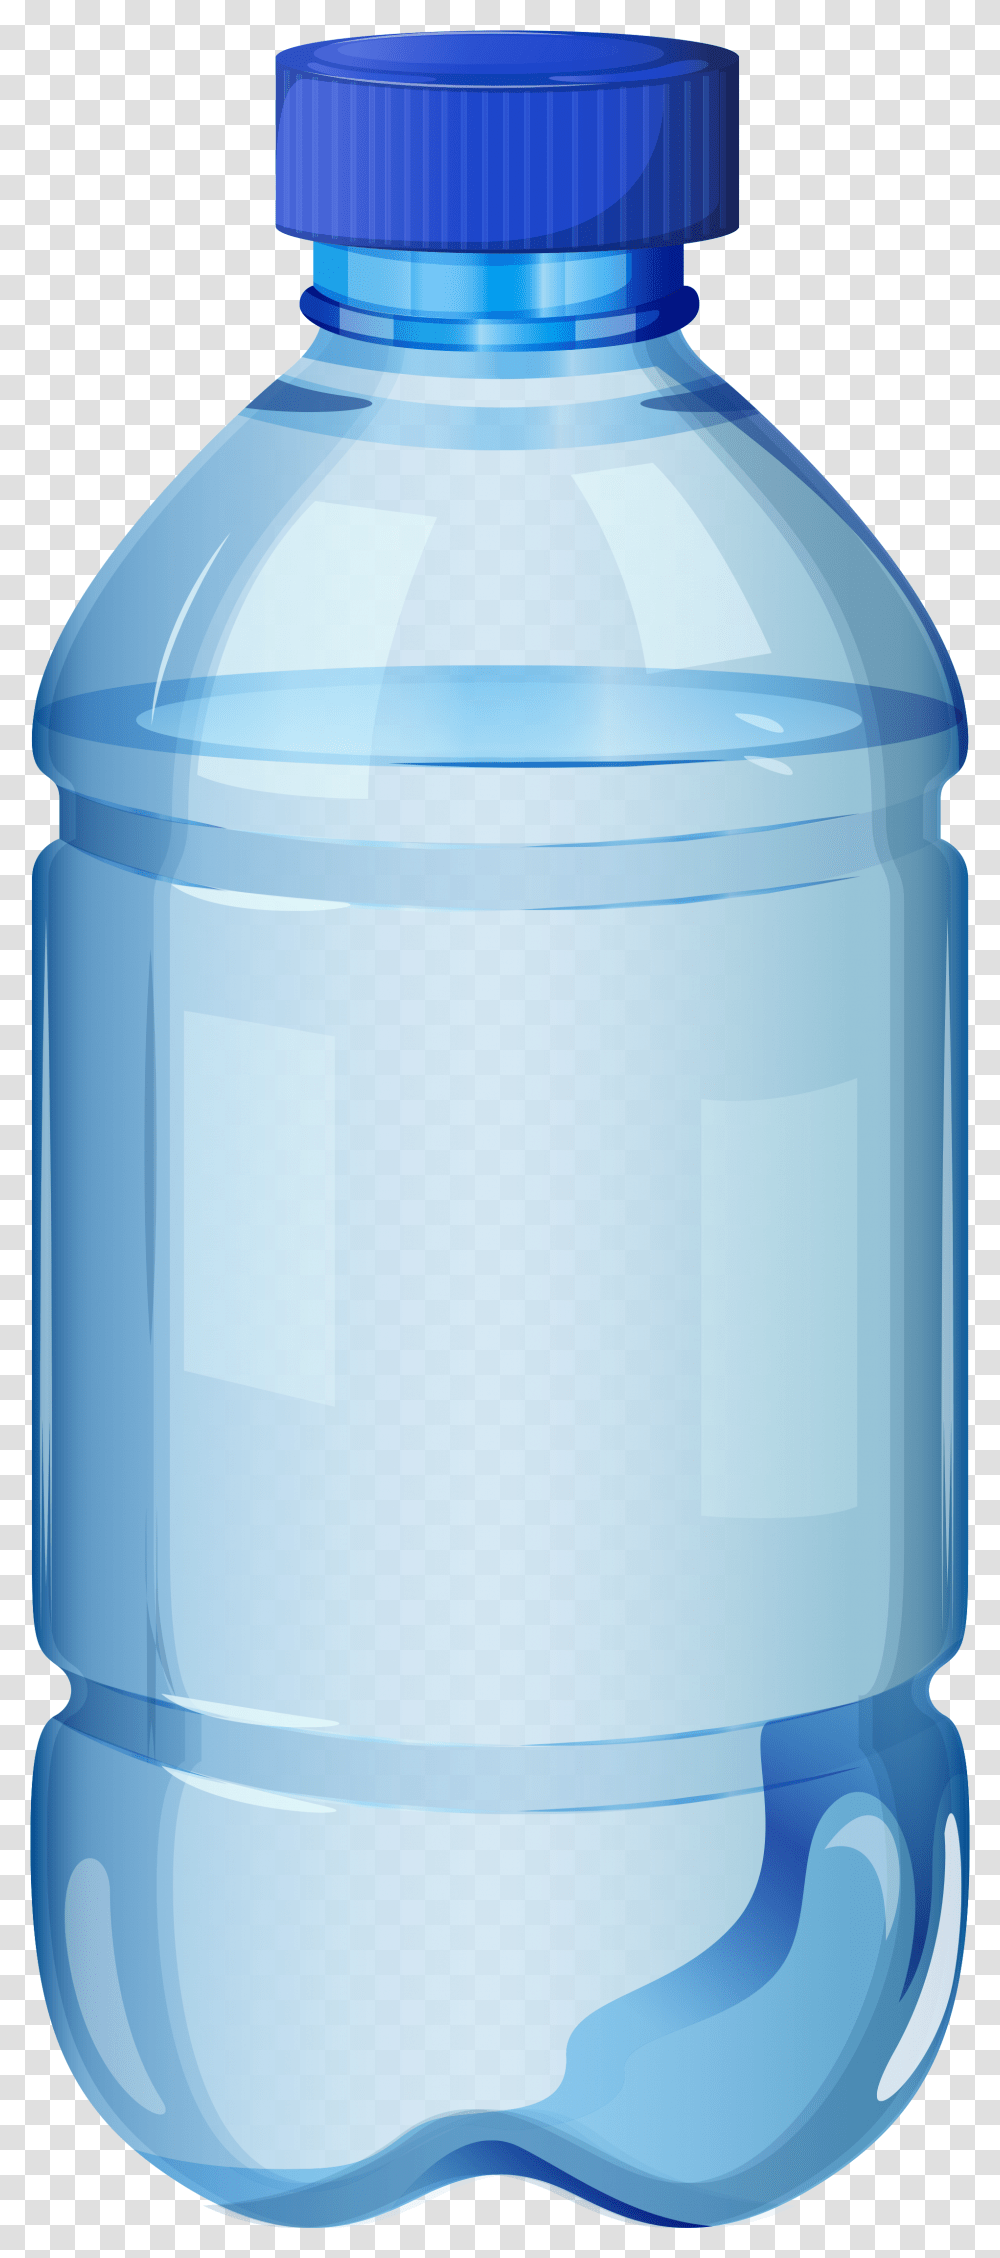 Bottle Hd, Shaker, Jar, Jug, Water Bottle Transparent Png